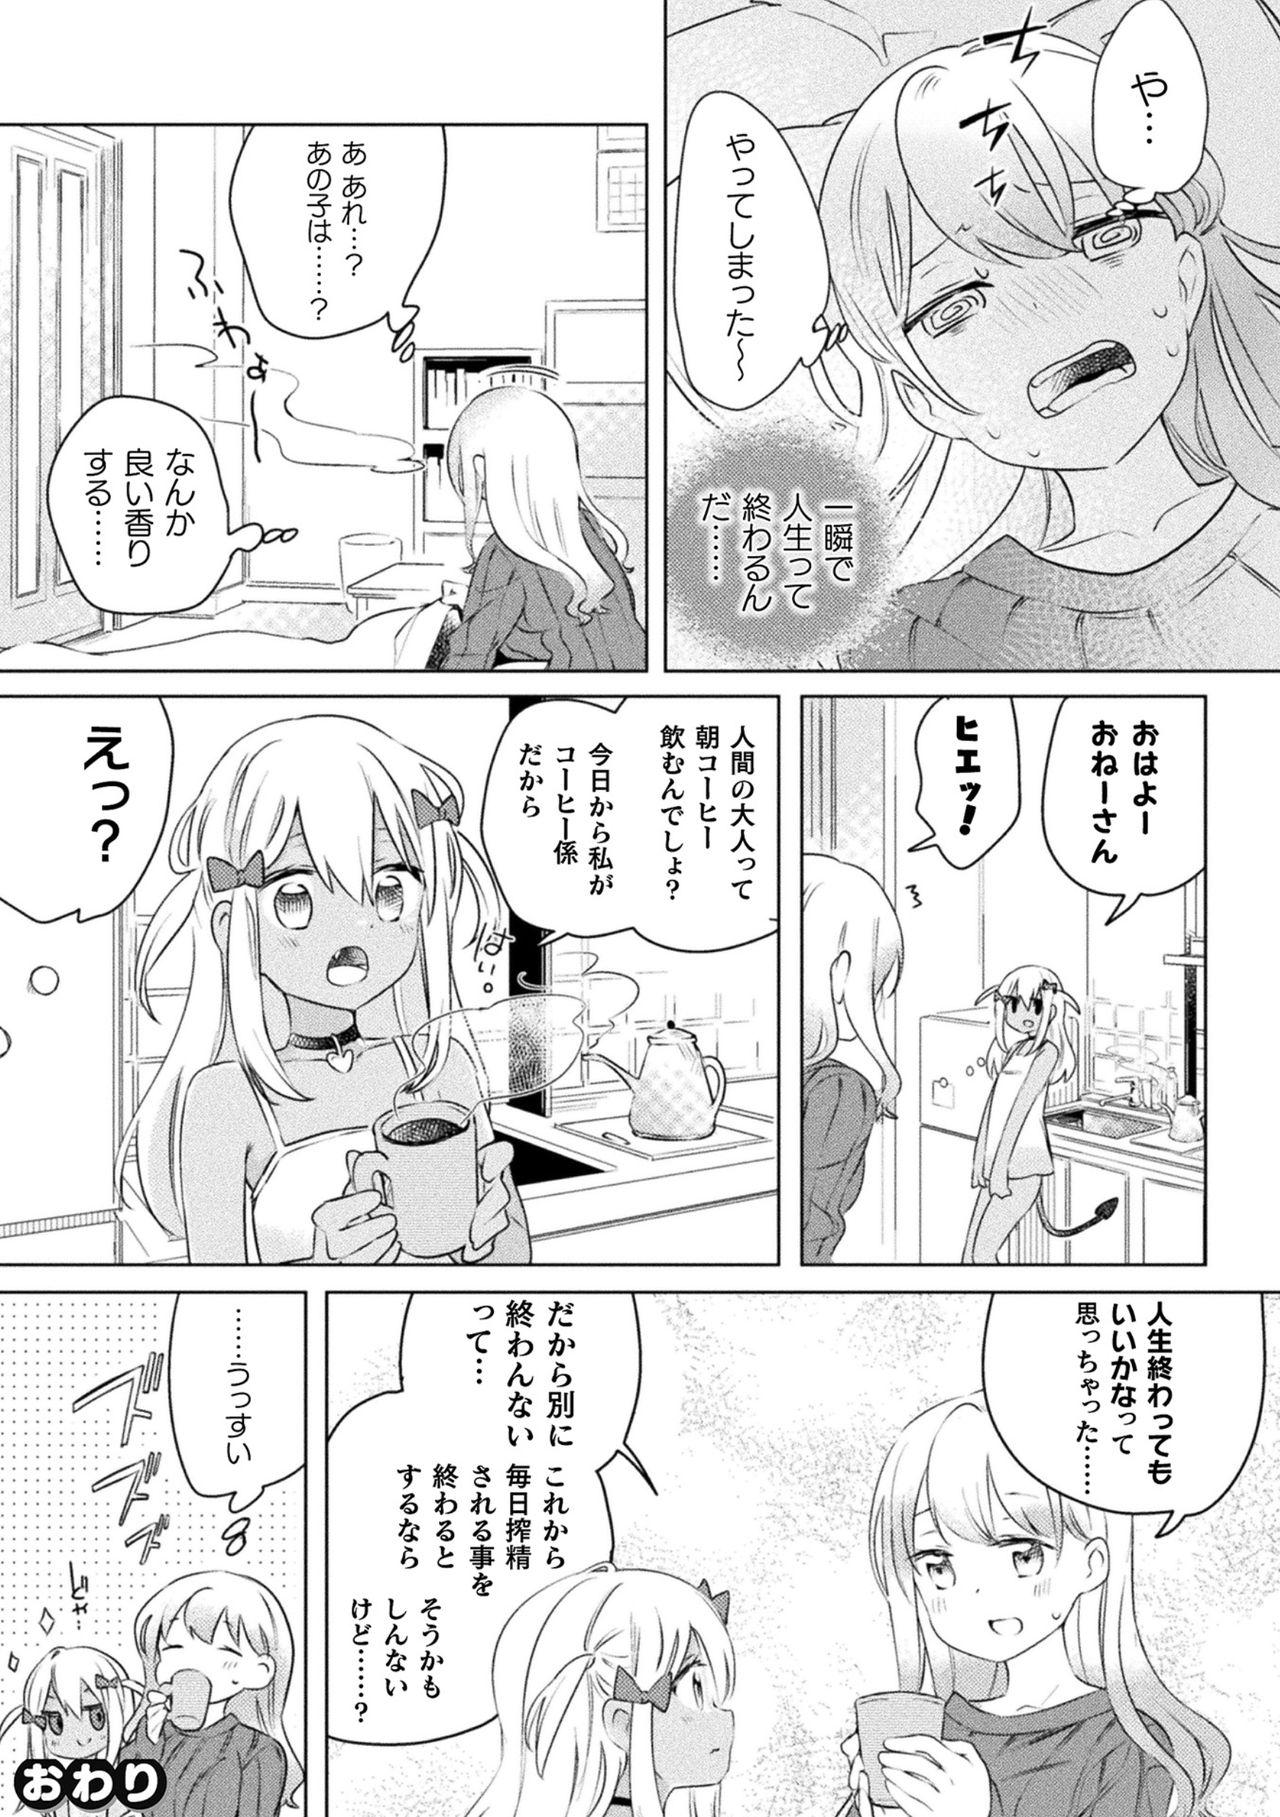 2D Comic Magazine Mesugaki vs Yasashii Onee-san Vol. 1 70